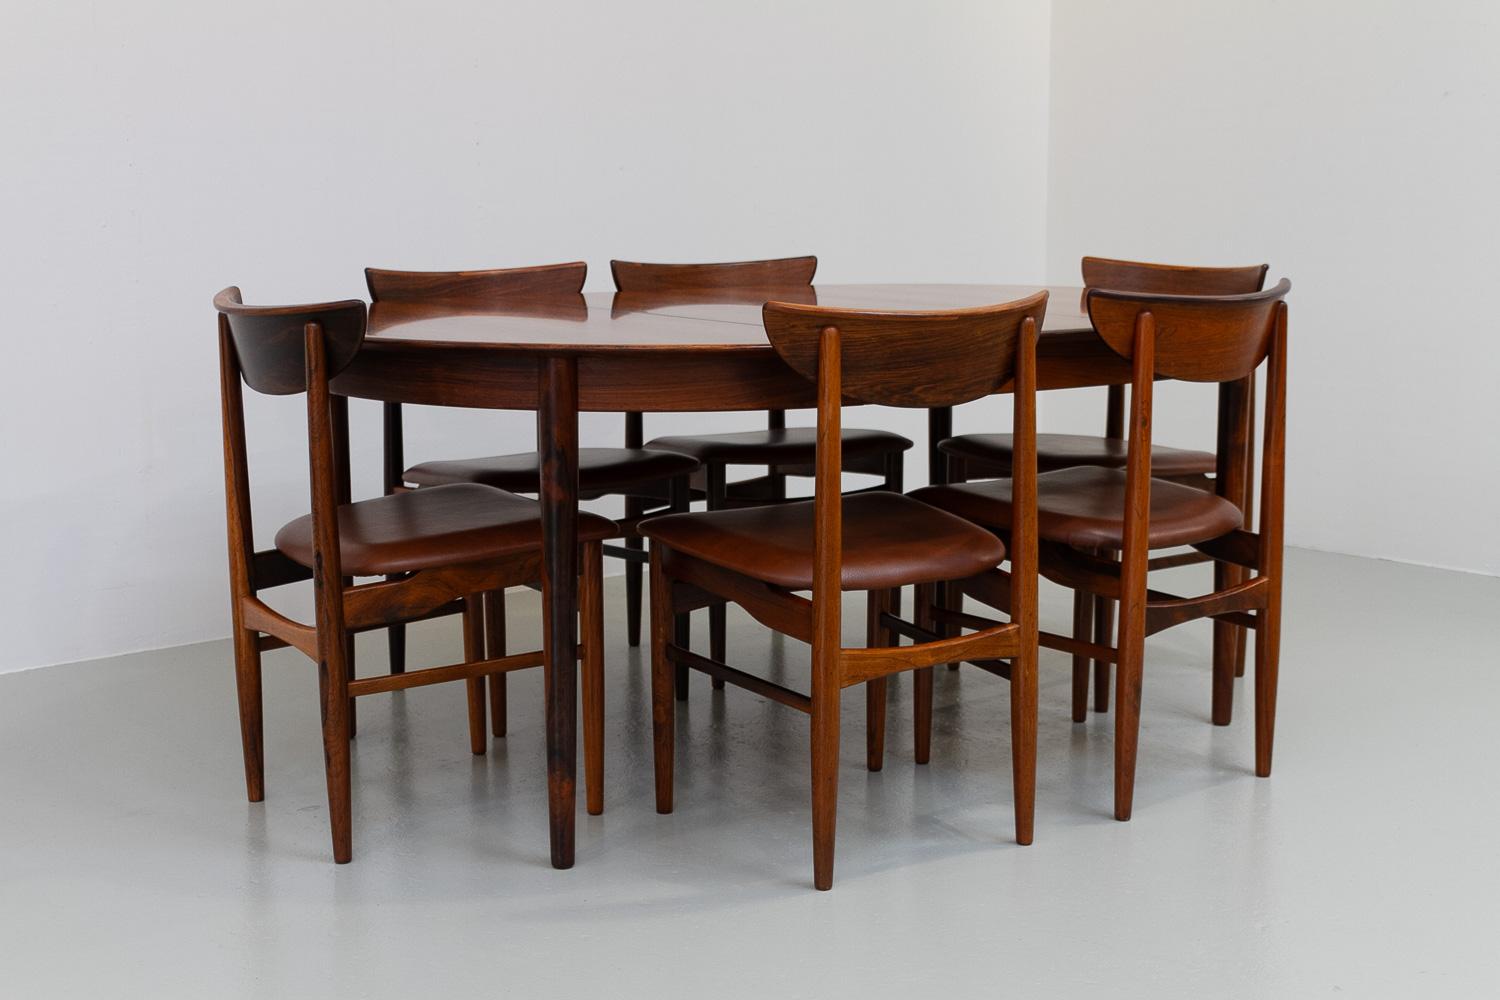 Ensemble de salle à manger danois moderne en bois de rose par Skovby, années 1960.
Superbe ensemble de salle à manger comprenant une table ronde extensible et six chaises de salle à manger assorties en bois de rose. Conçu par E. W. Bach et fabriqué